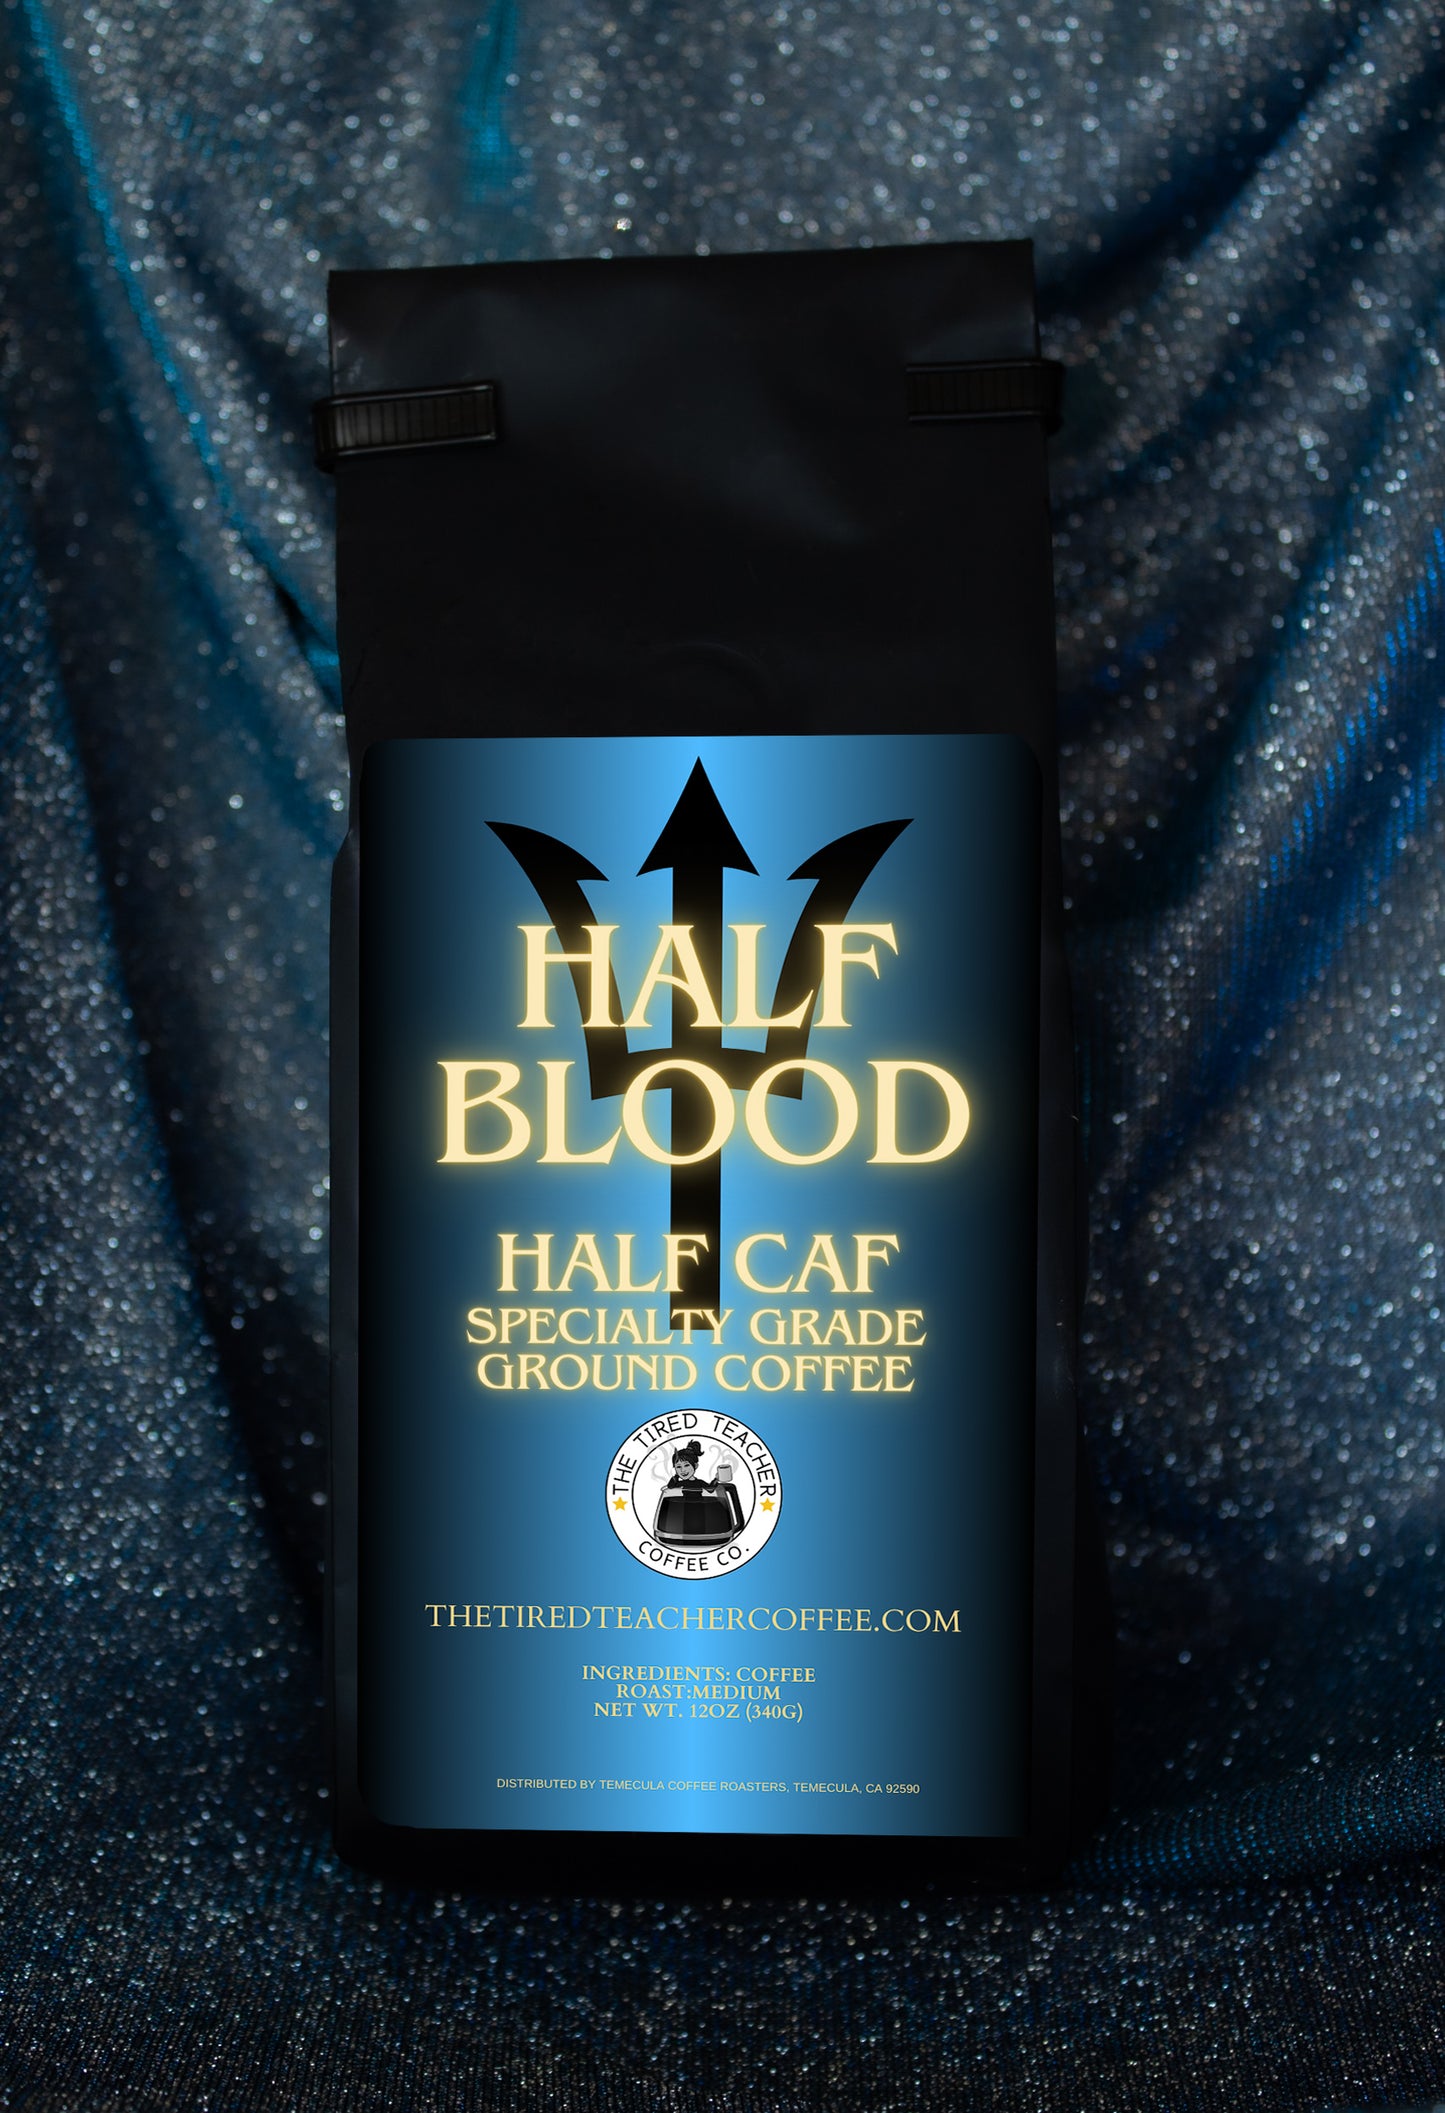 Half Blood Half Caf